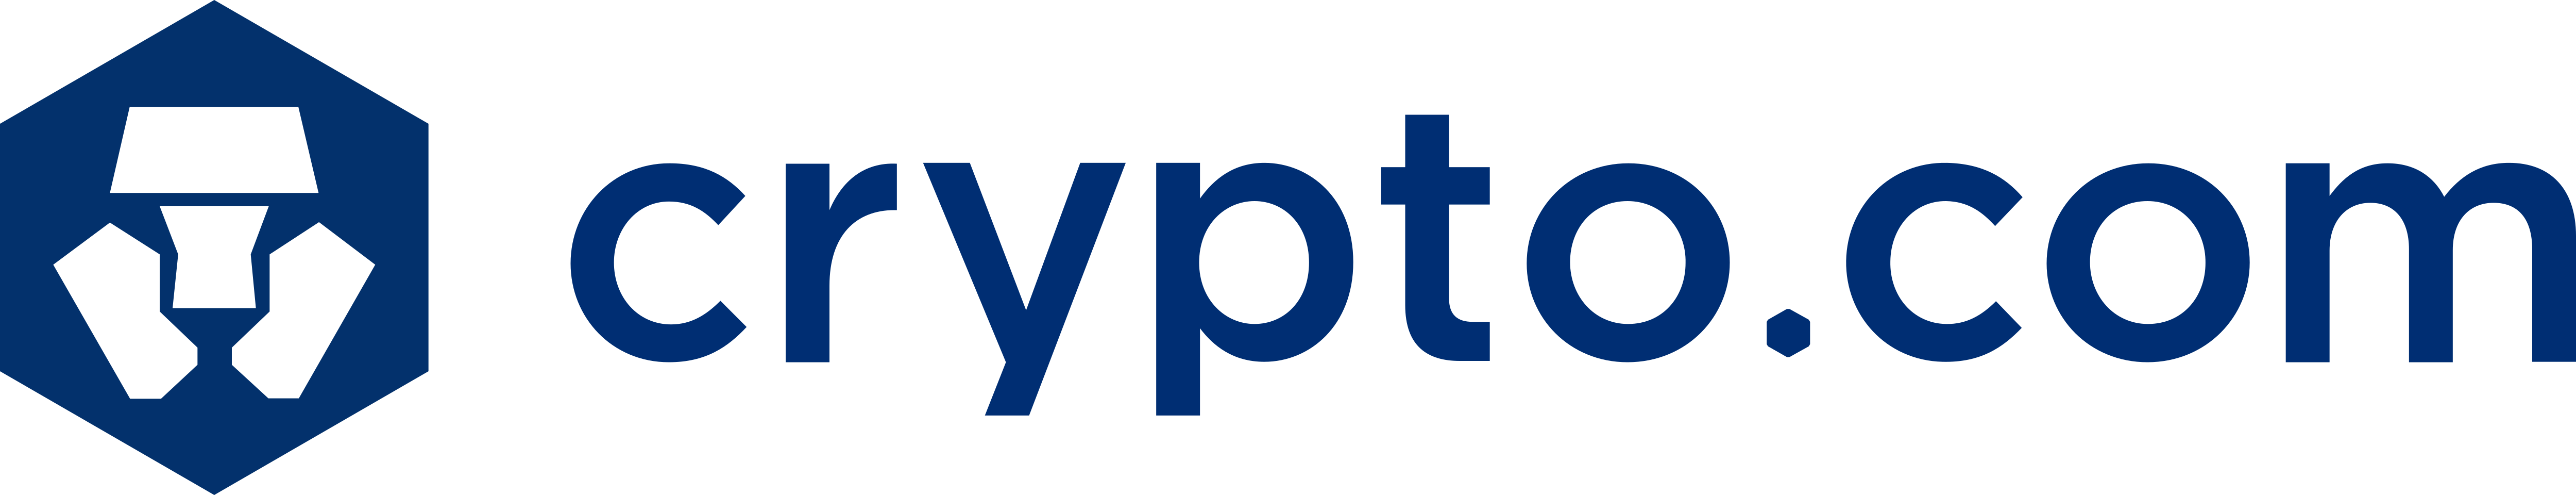 crypto.com company